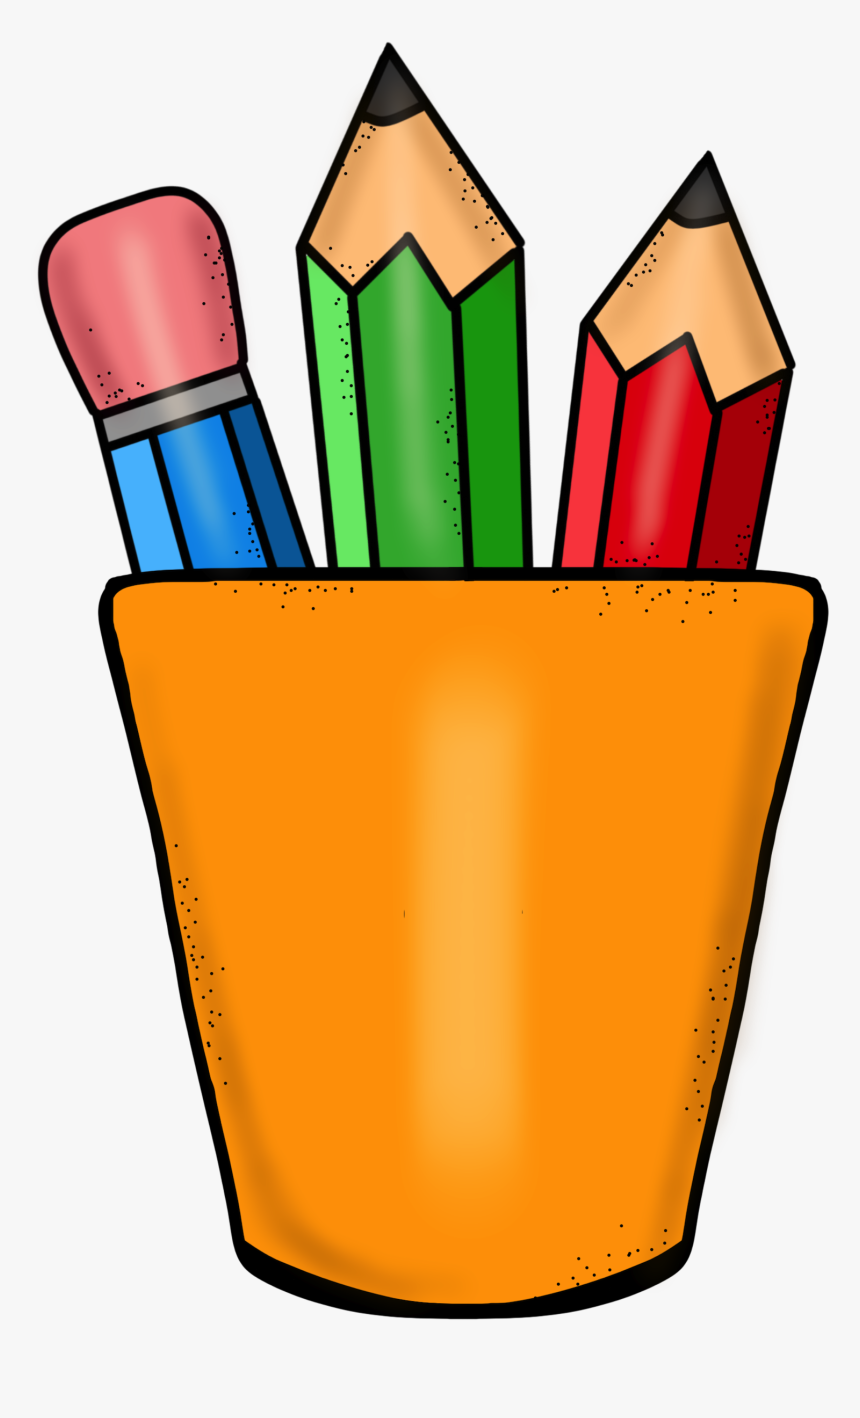 Essay Cliparts - 2 Pencils In A Pot Cartoon, HD Png Download, Free Download